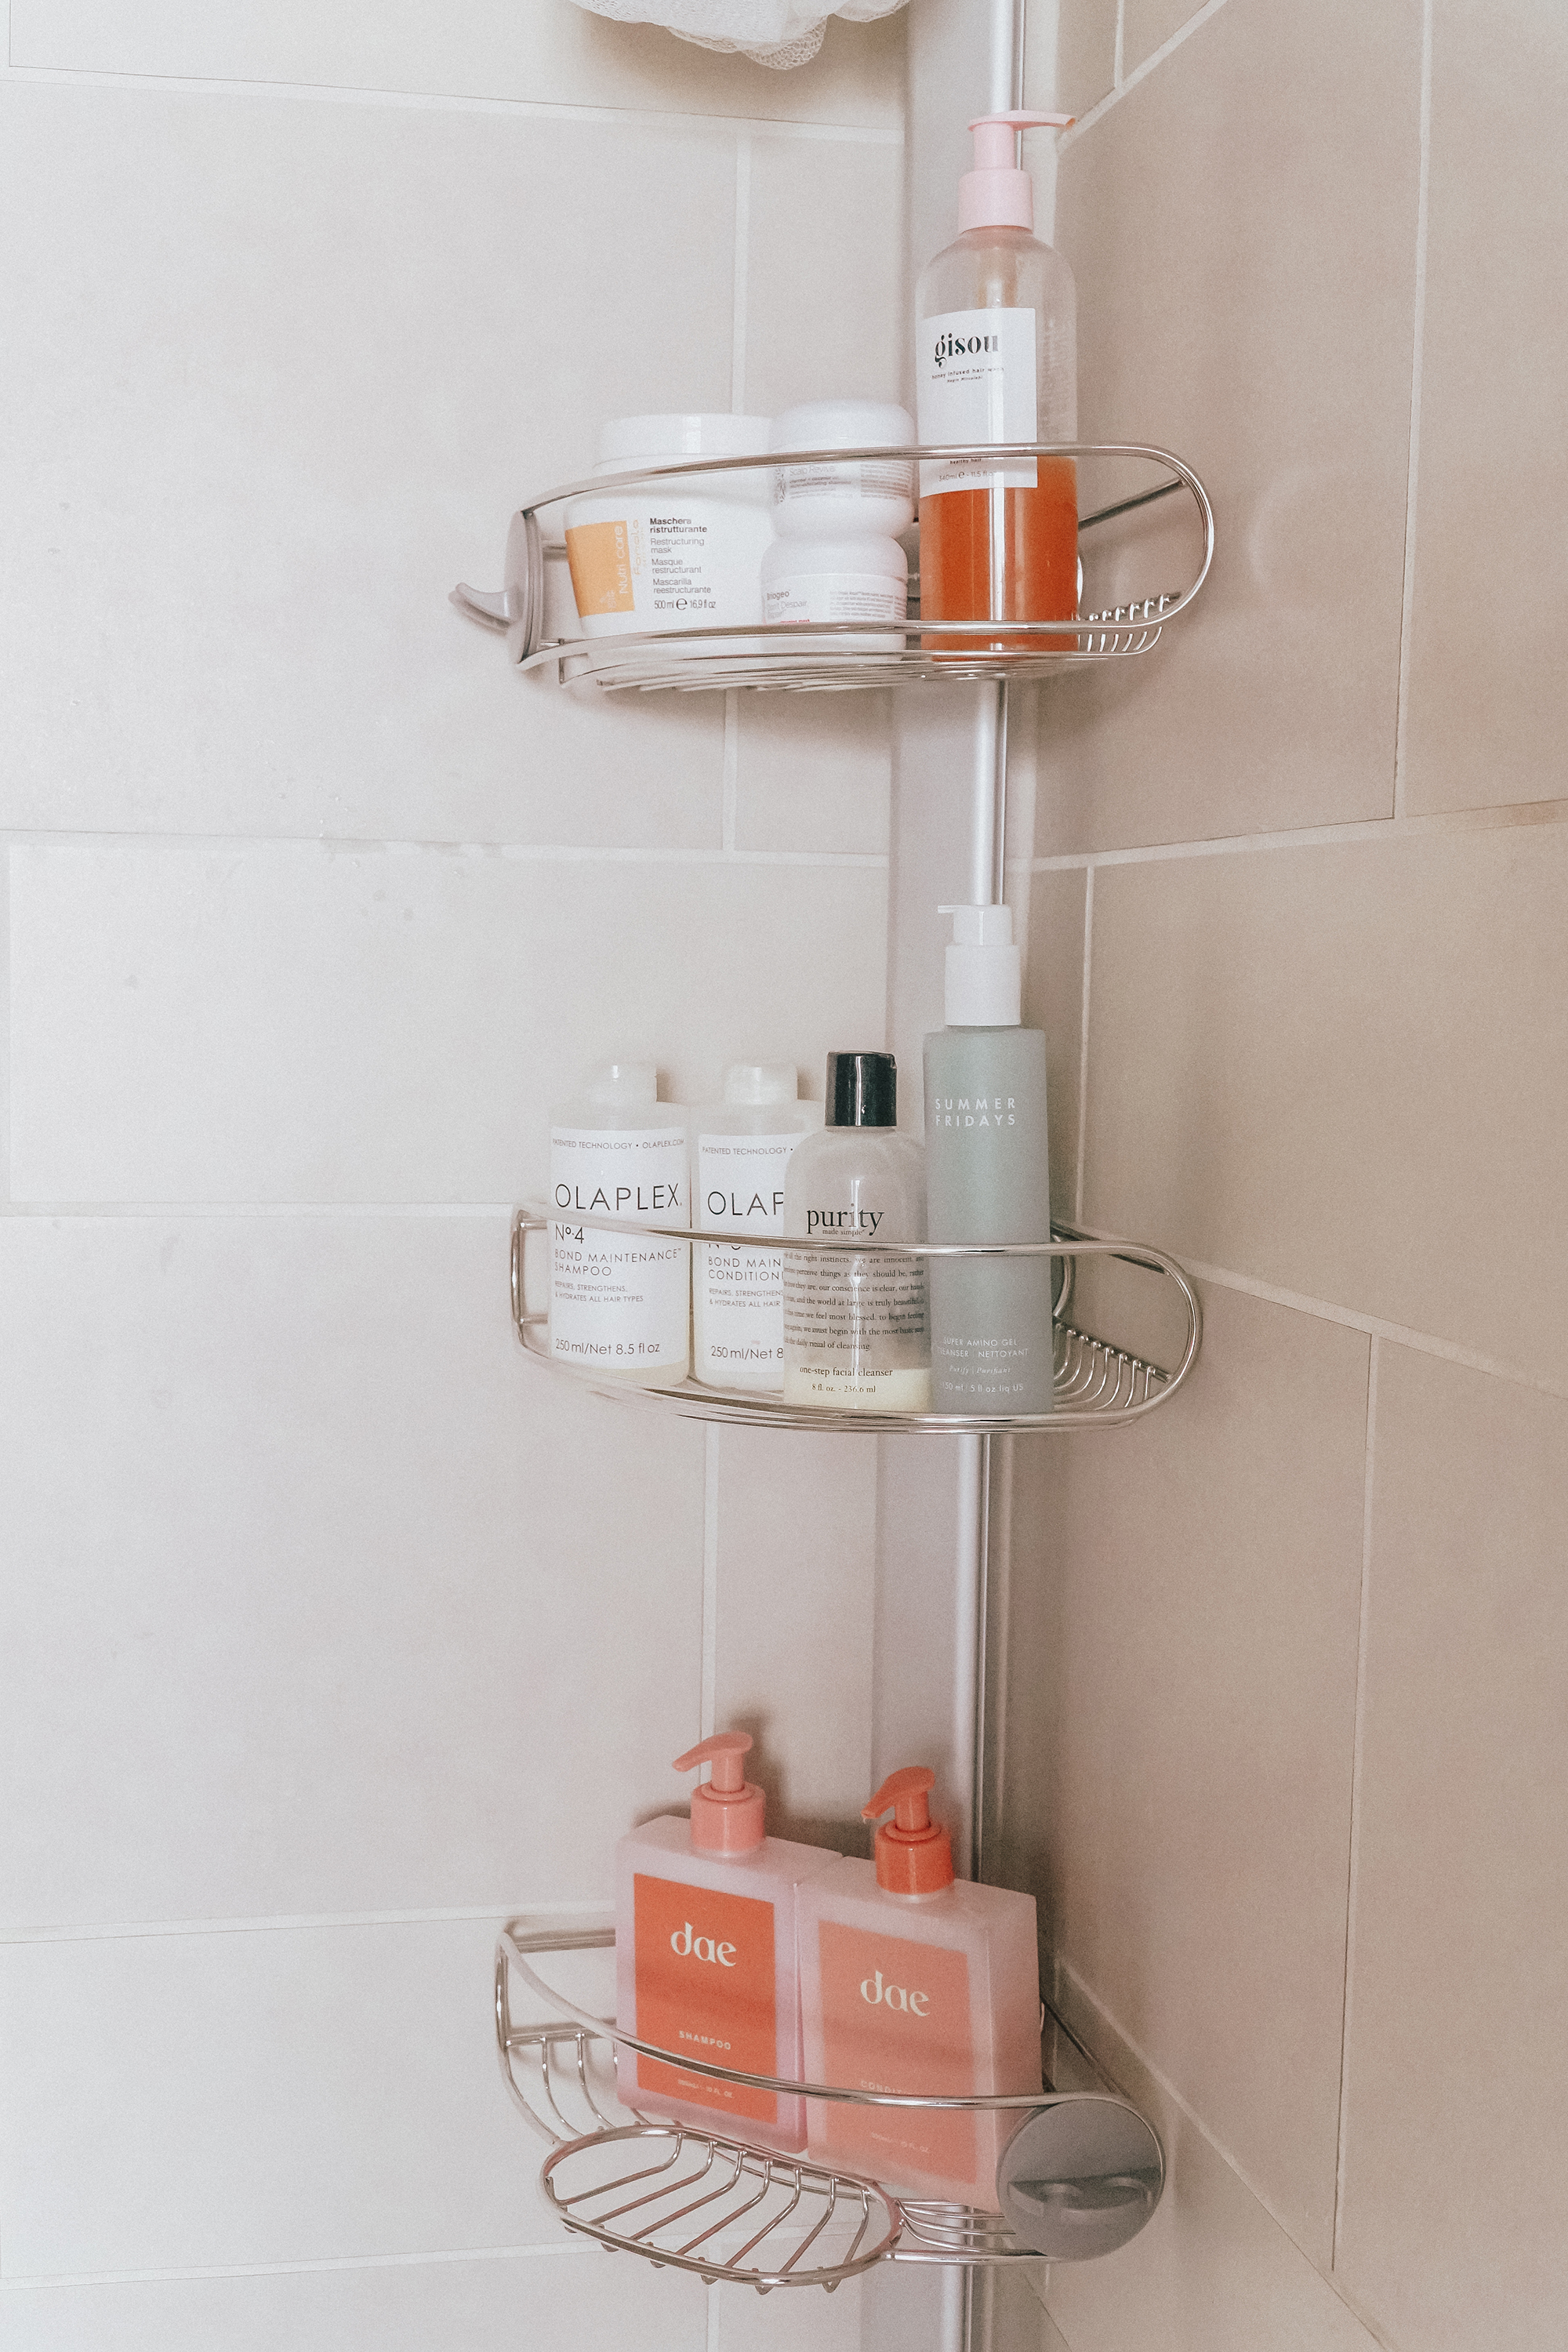 My Shower Storage Solution  Shower storage solutions, Shower storage, Bathroom  shower organization